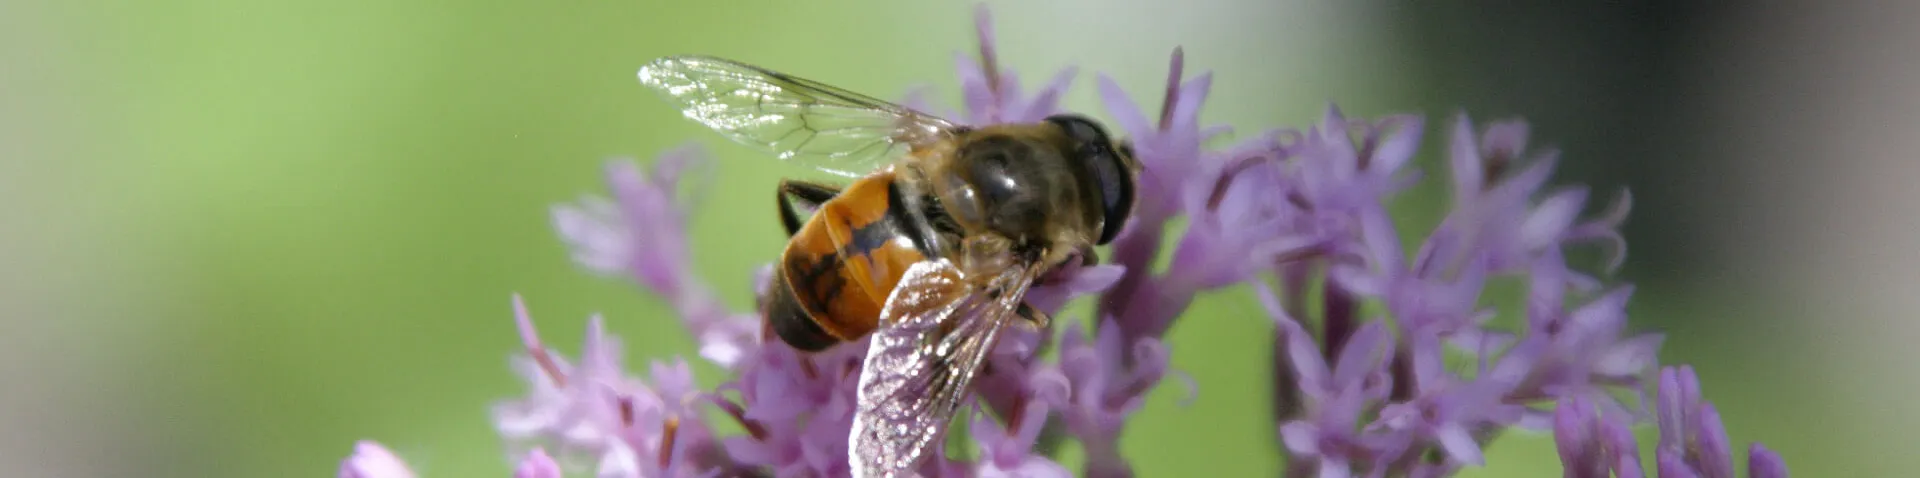 Nahaufnahme von einer Biene auf einer Pflanze